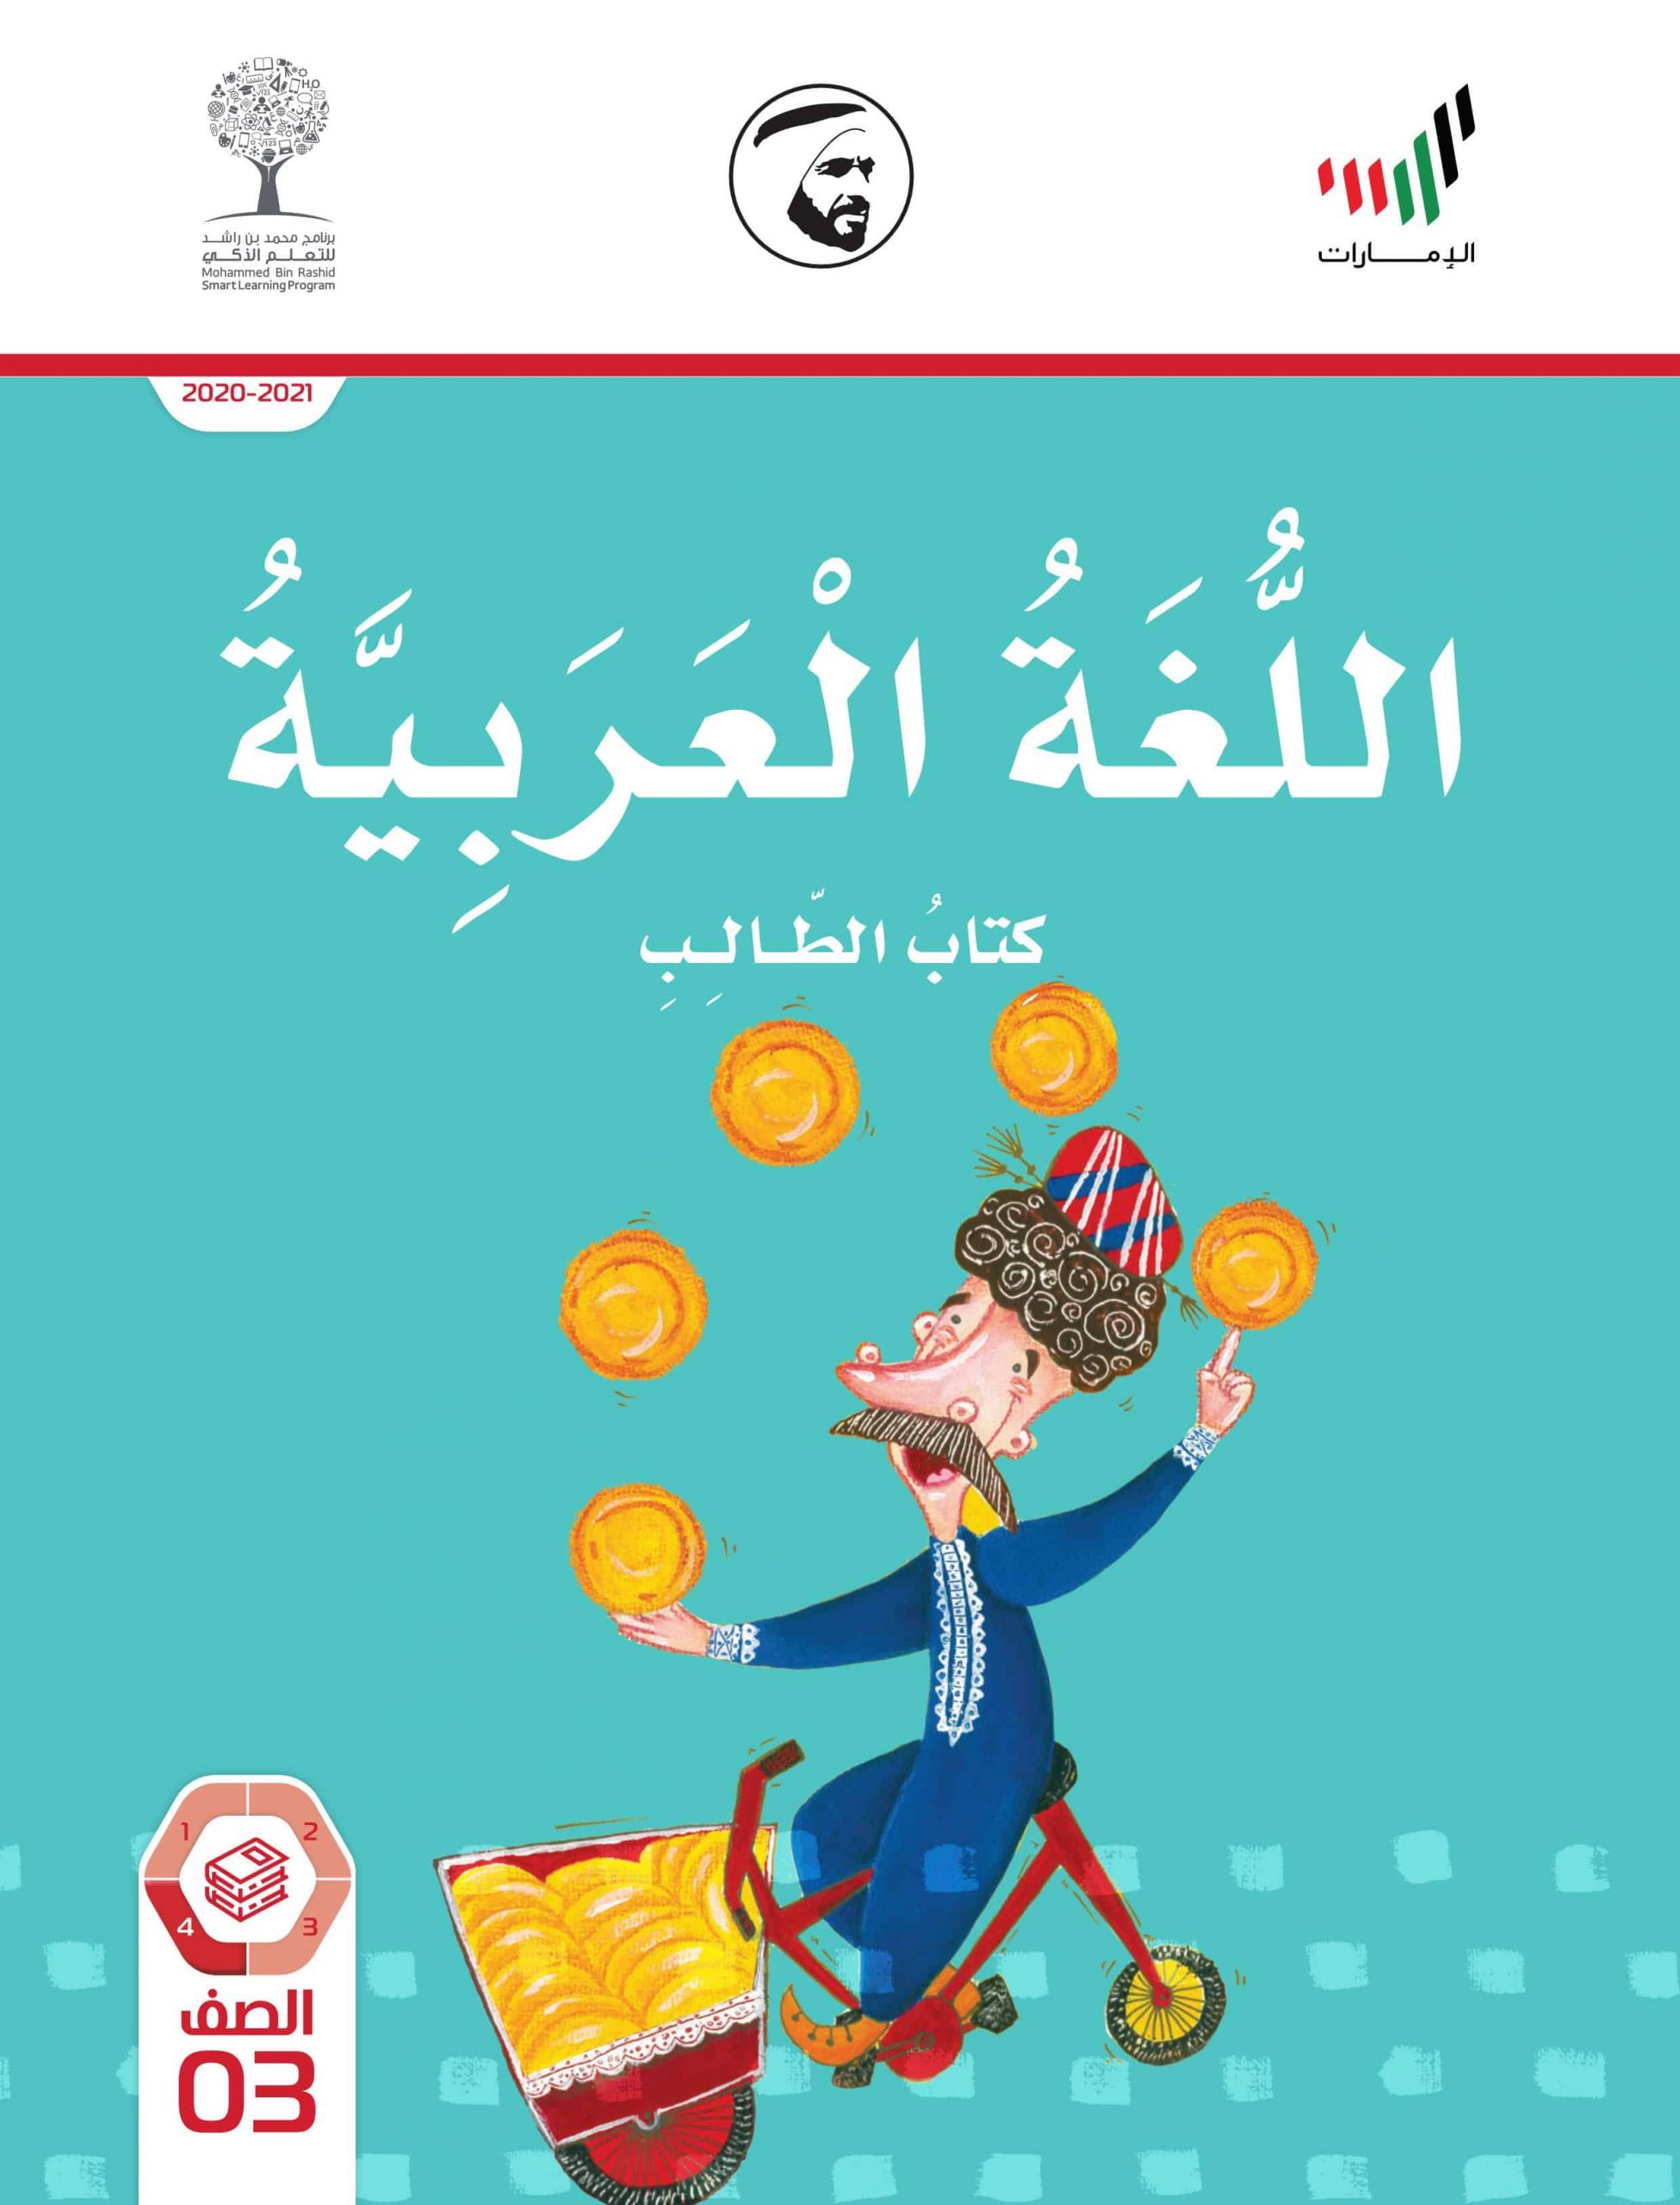 كتاب الطالب الفصل الدراسي الثالث 2020-2021 الصف الثالث مادة اللغة العربية